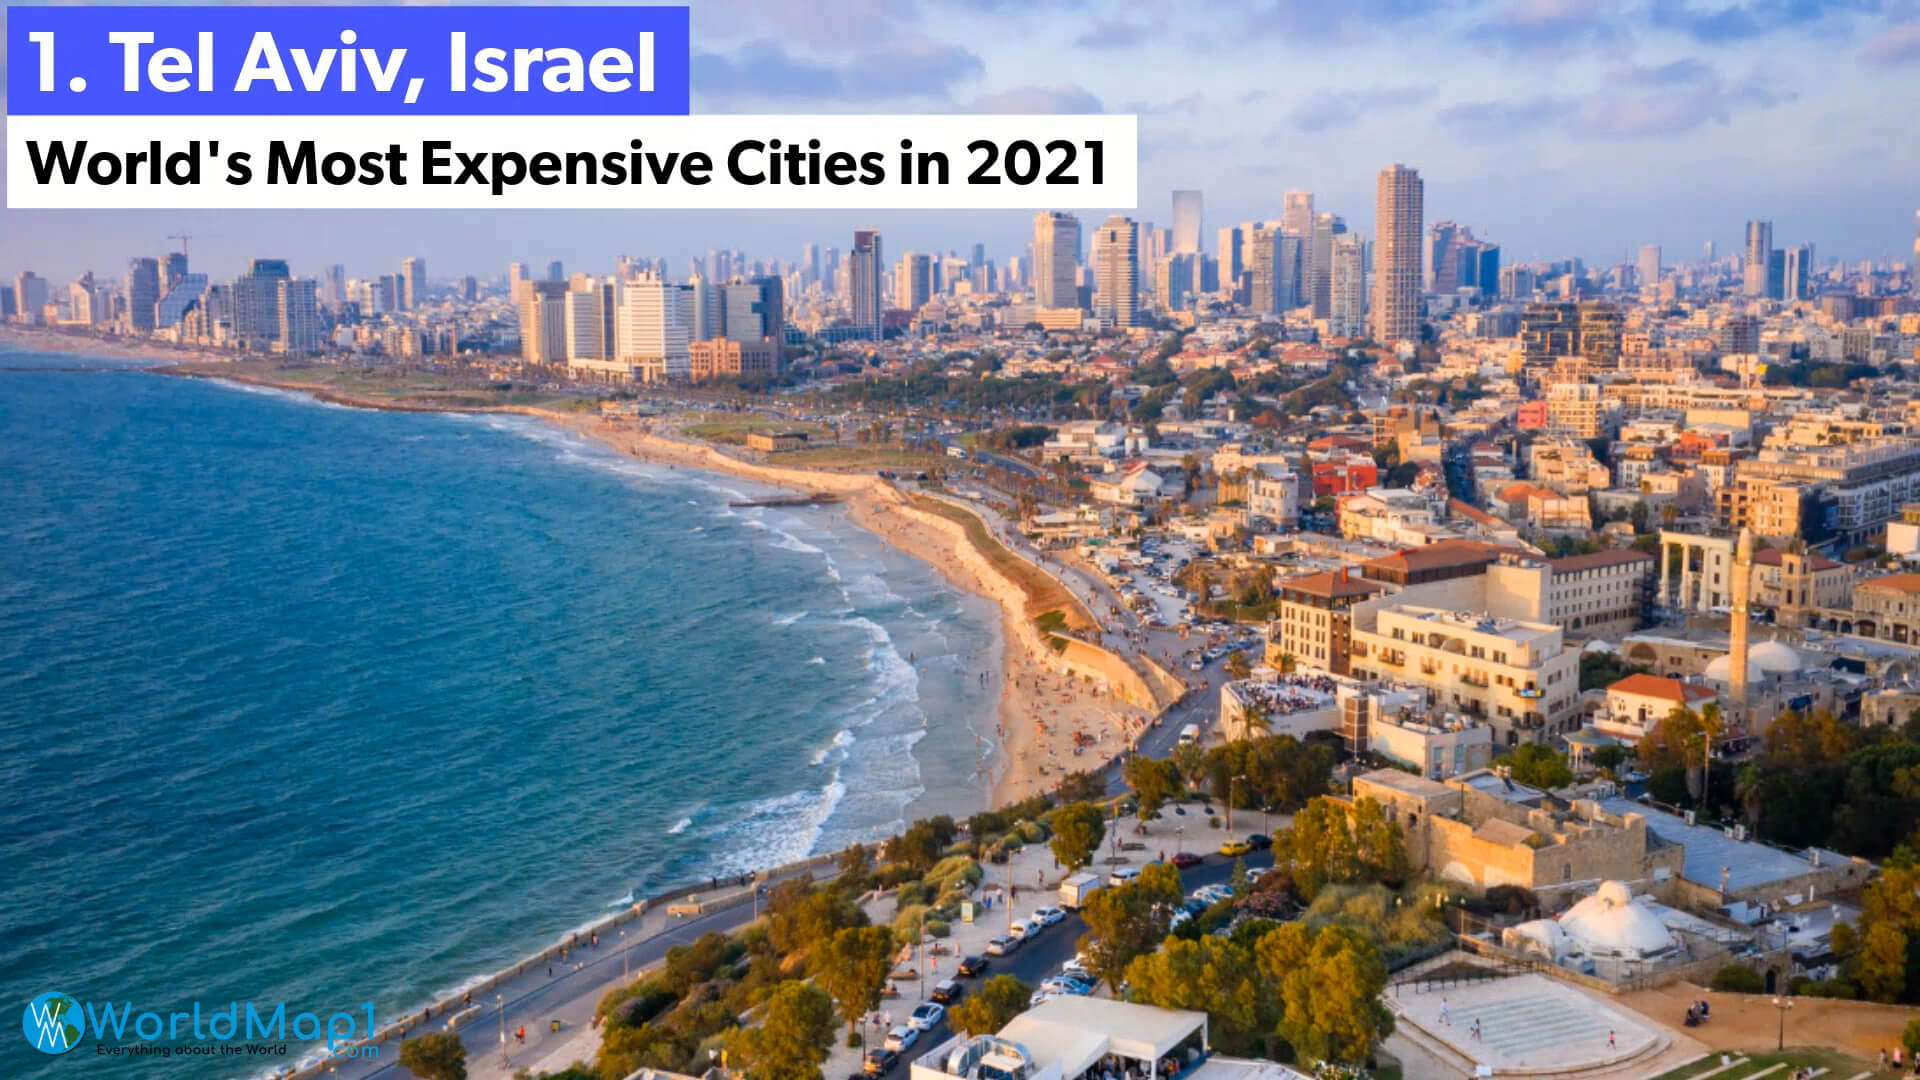 Die teuersten Städte der Welt - Tel Aviv, Israel